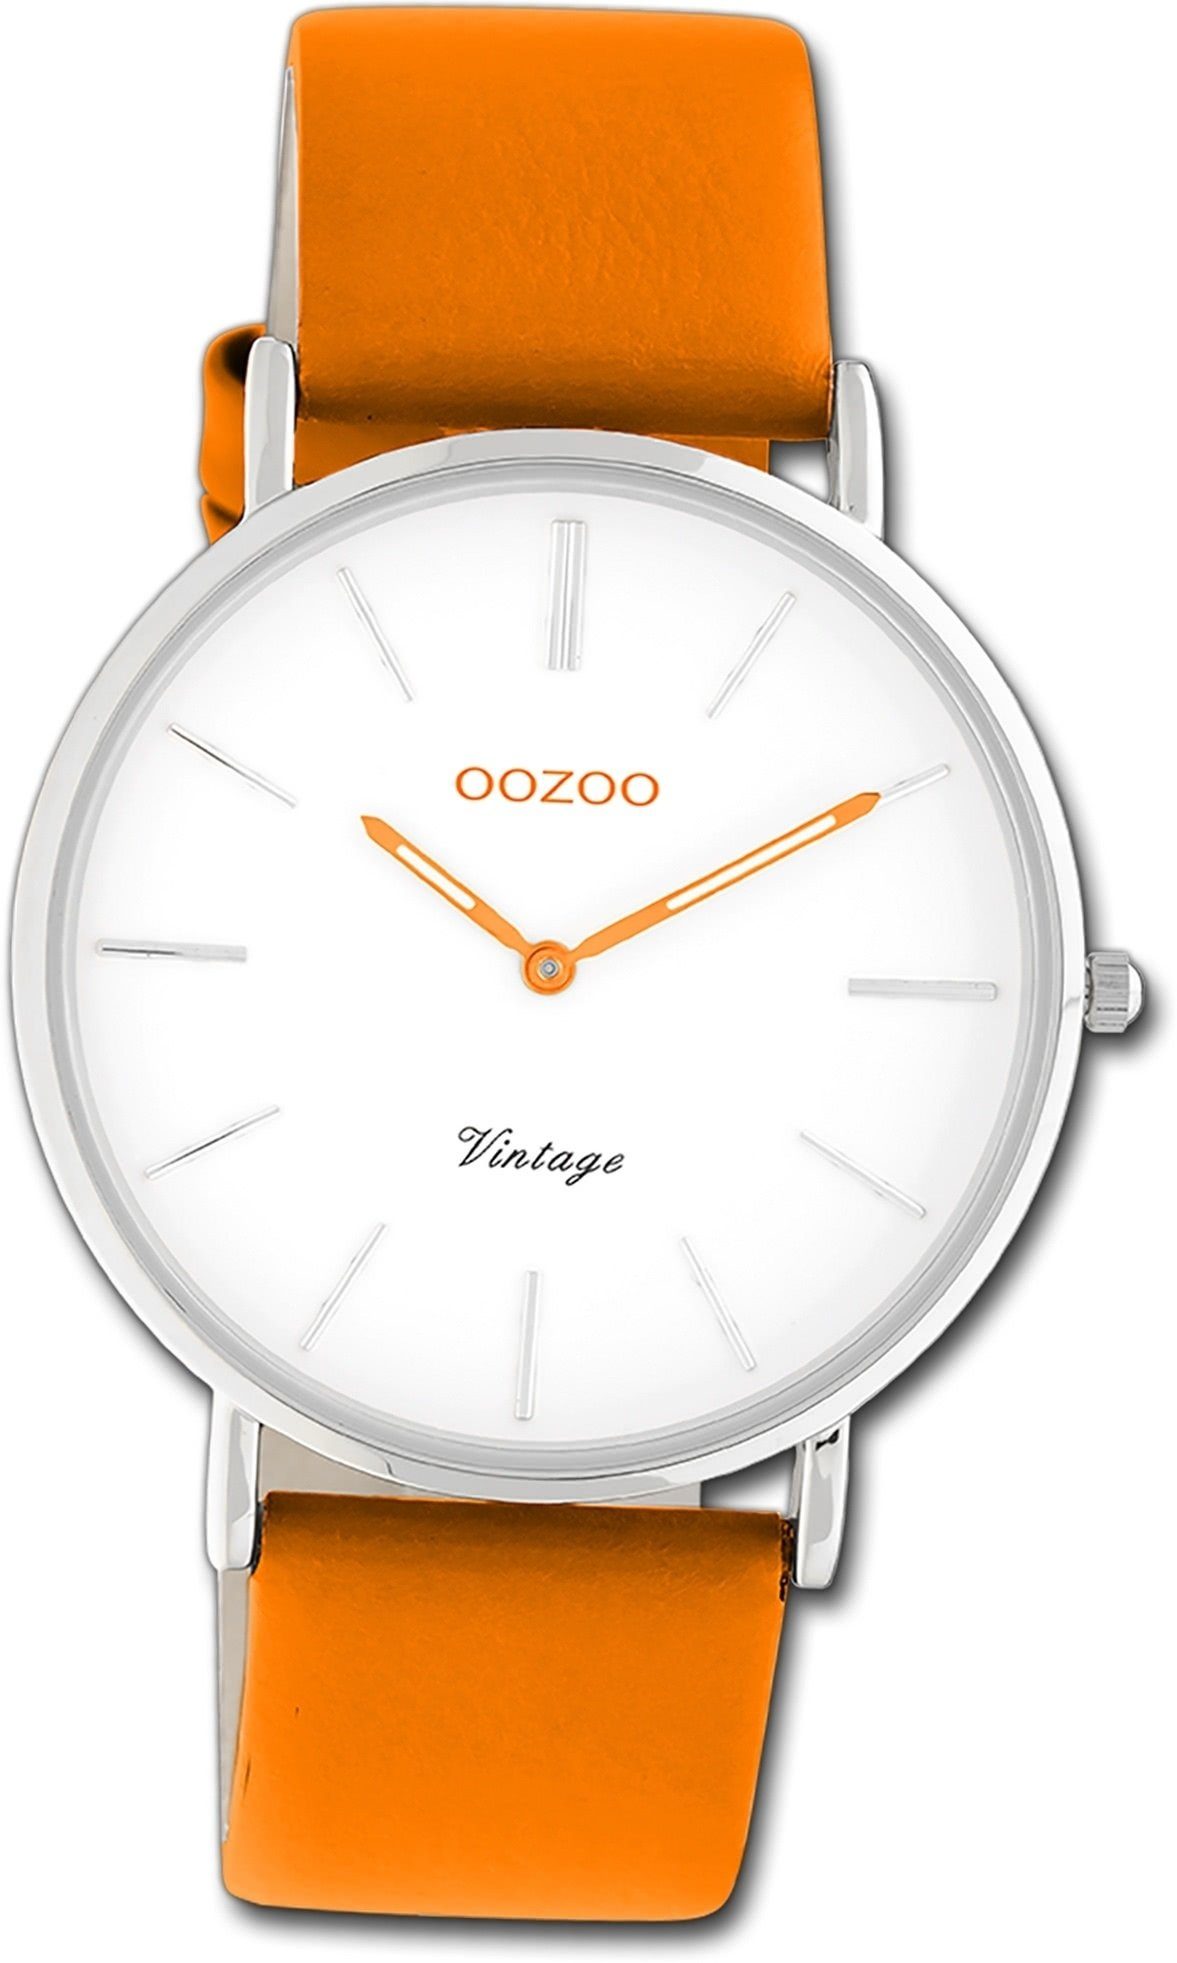 Vintage Damen orange, OOZOO groß Series, Quarzuhr 40mm) Oozoo Gehäuse, (ca. Armbanduhr rundes Lederarmband Damenuhr